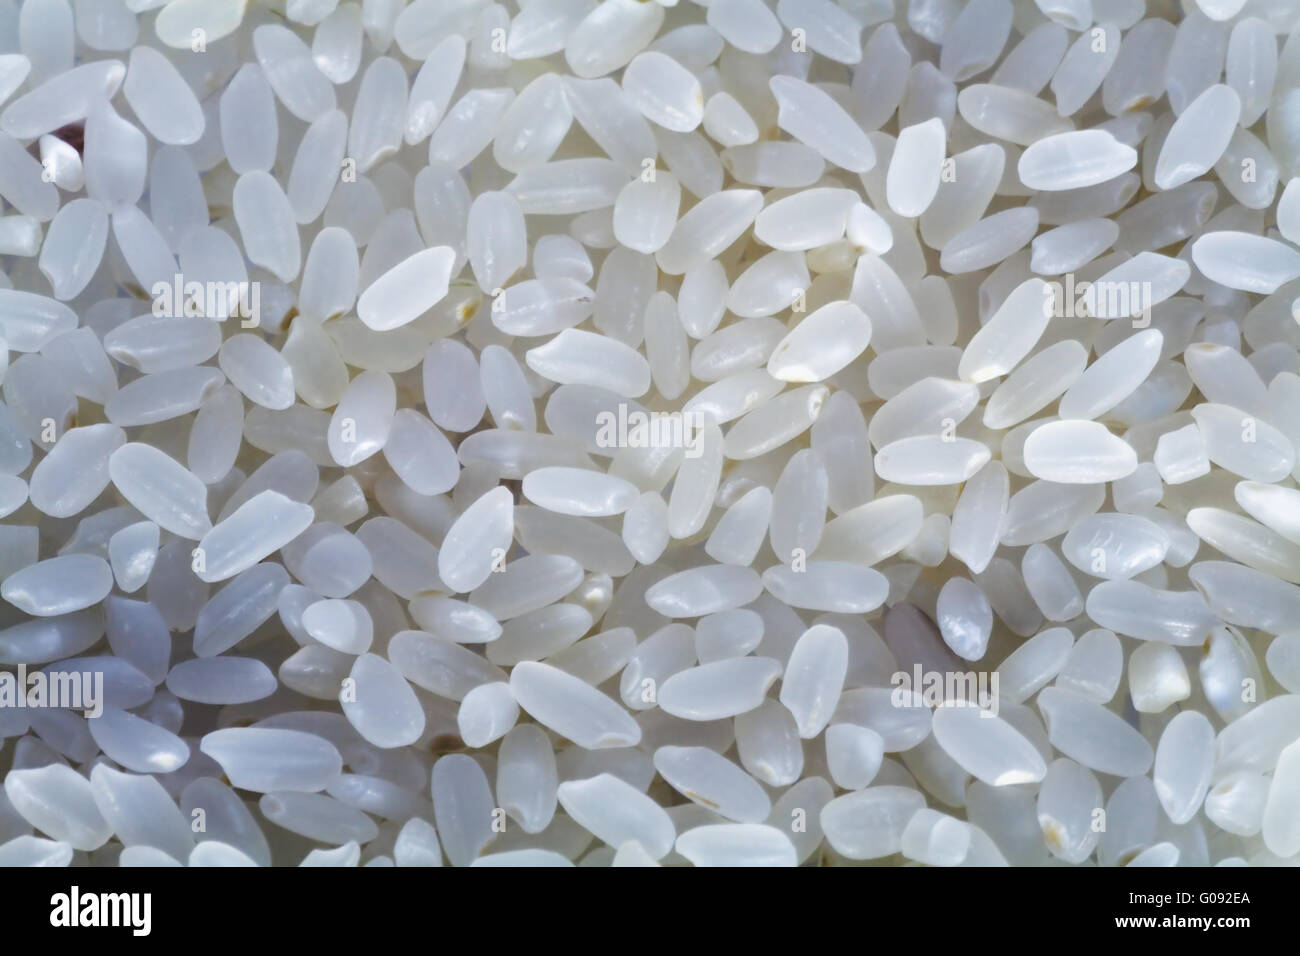 Bianco selezionato i grani di riso come alimento in background Foto Stock